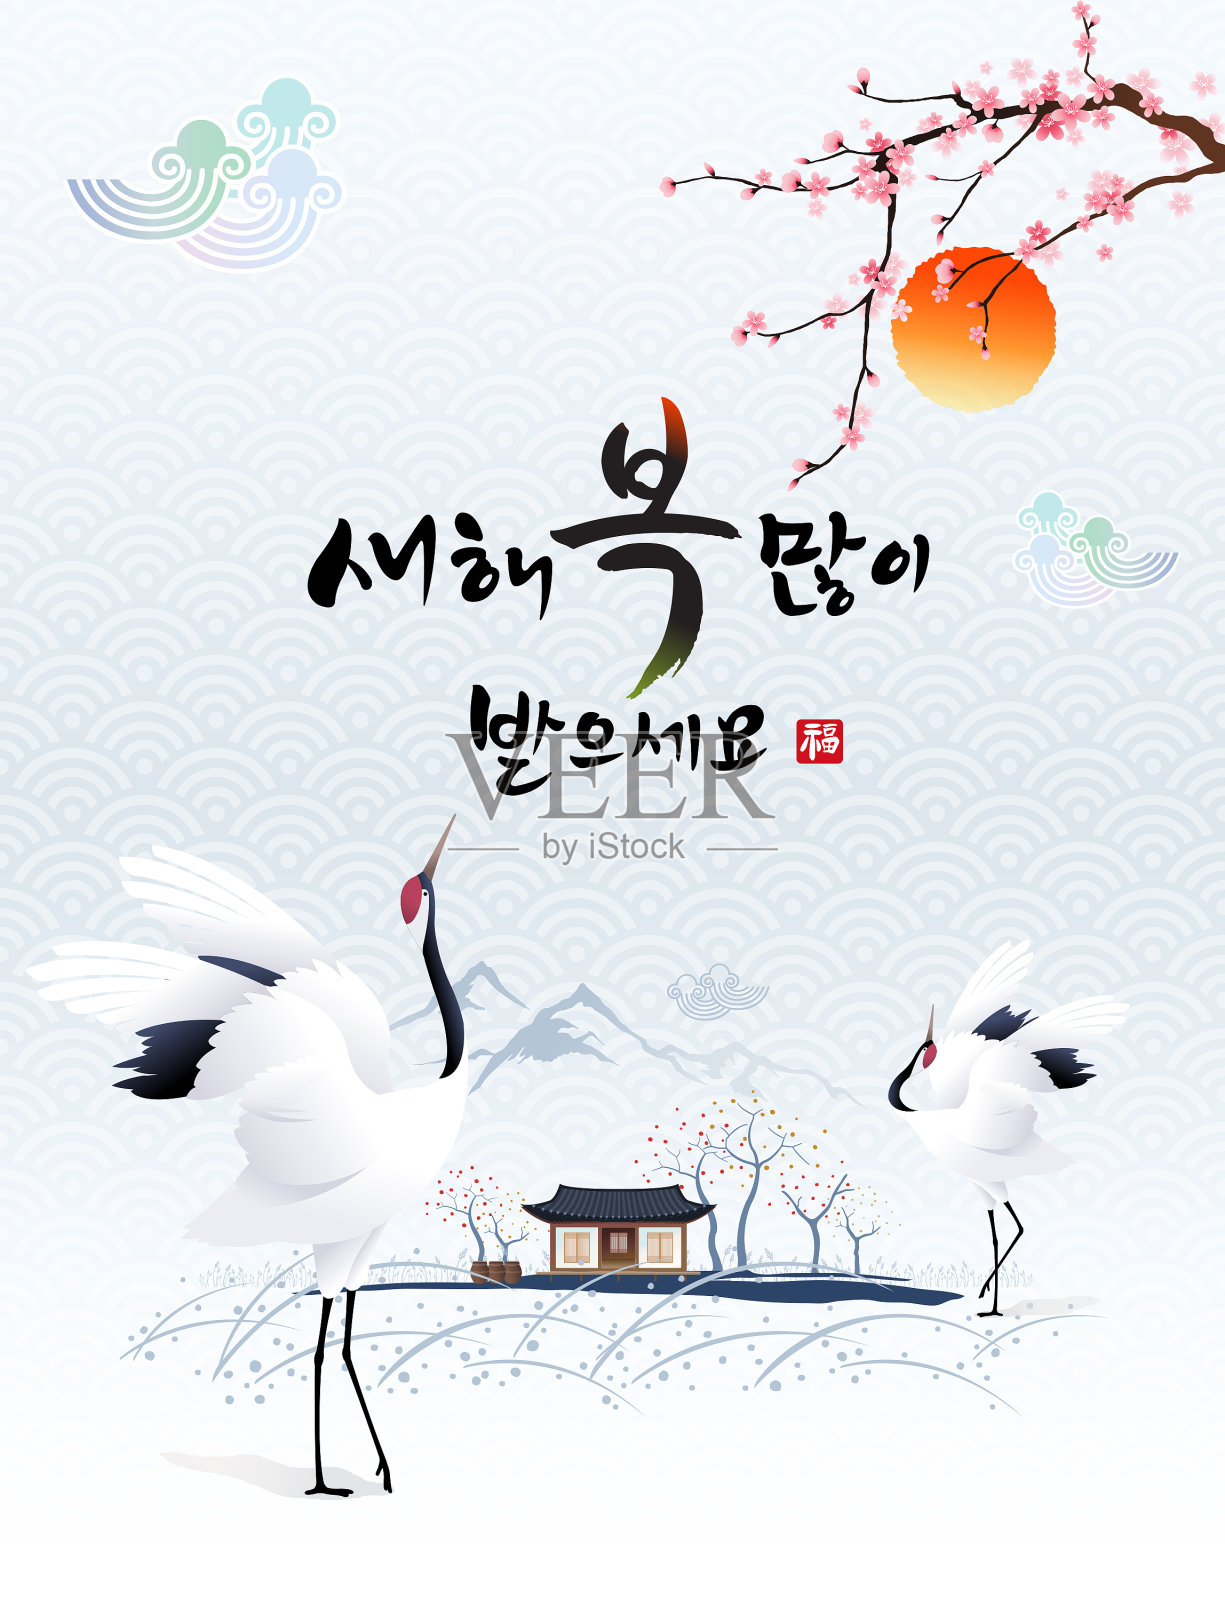 “新年快乐，韩文翻译:新年快乐”的书法和韩国传统房屋和跳舞的鹤鸟。插画图片素材